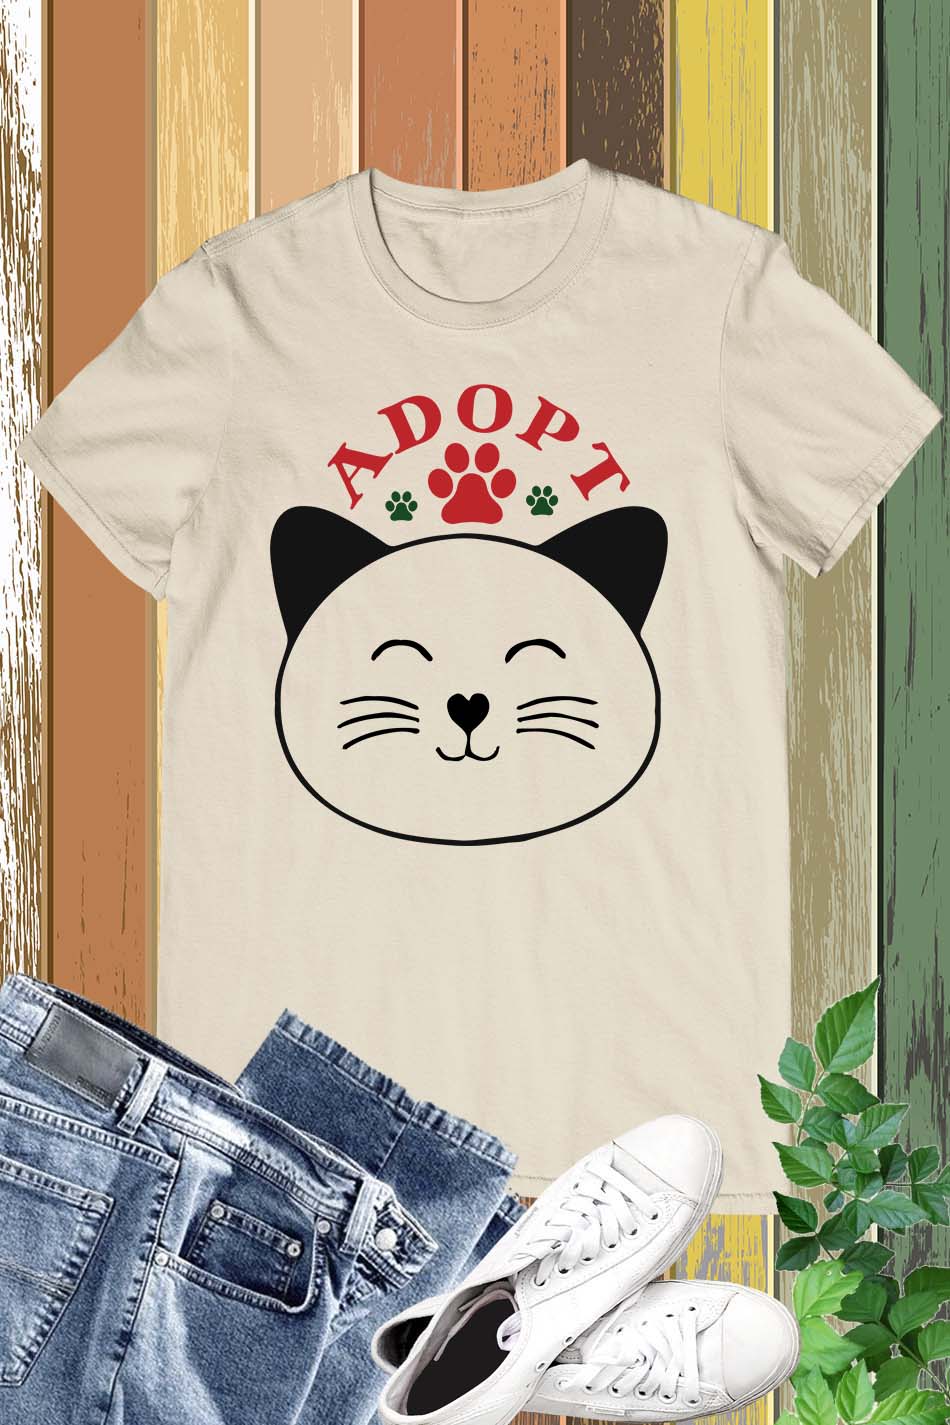 Adopt a Cat Shirts